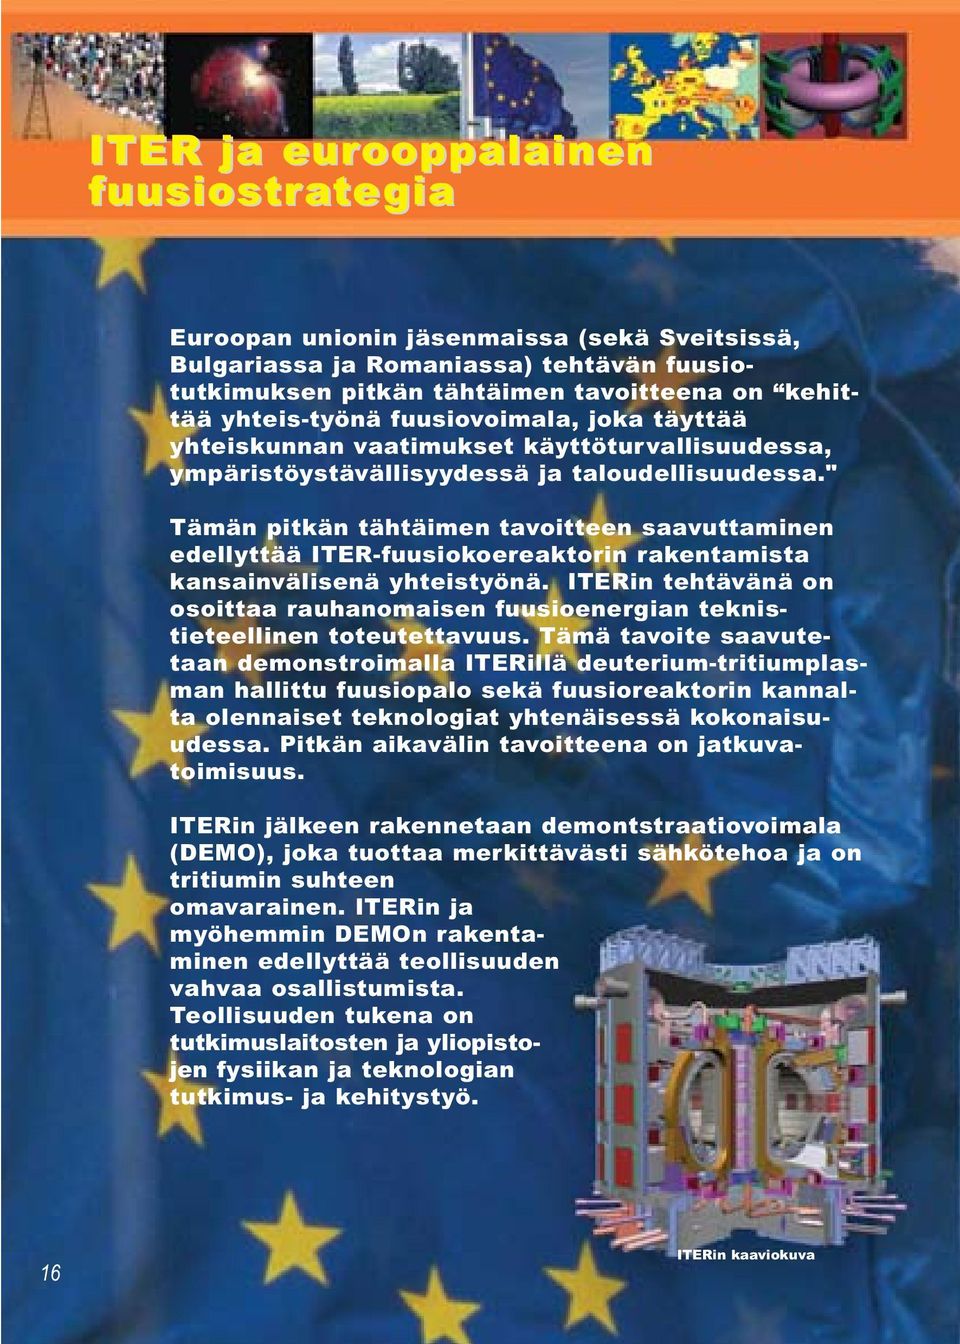 " Tämän pitkän tähtäimen tavoitteen saavuttaminen edellyttää ITER-fuusiokoereaktorin rakentamista kansainvälisenä yhteistyönä.